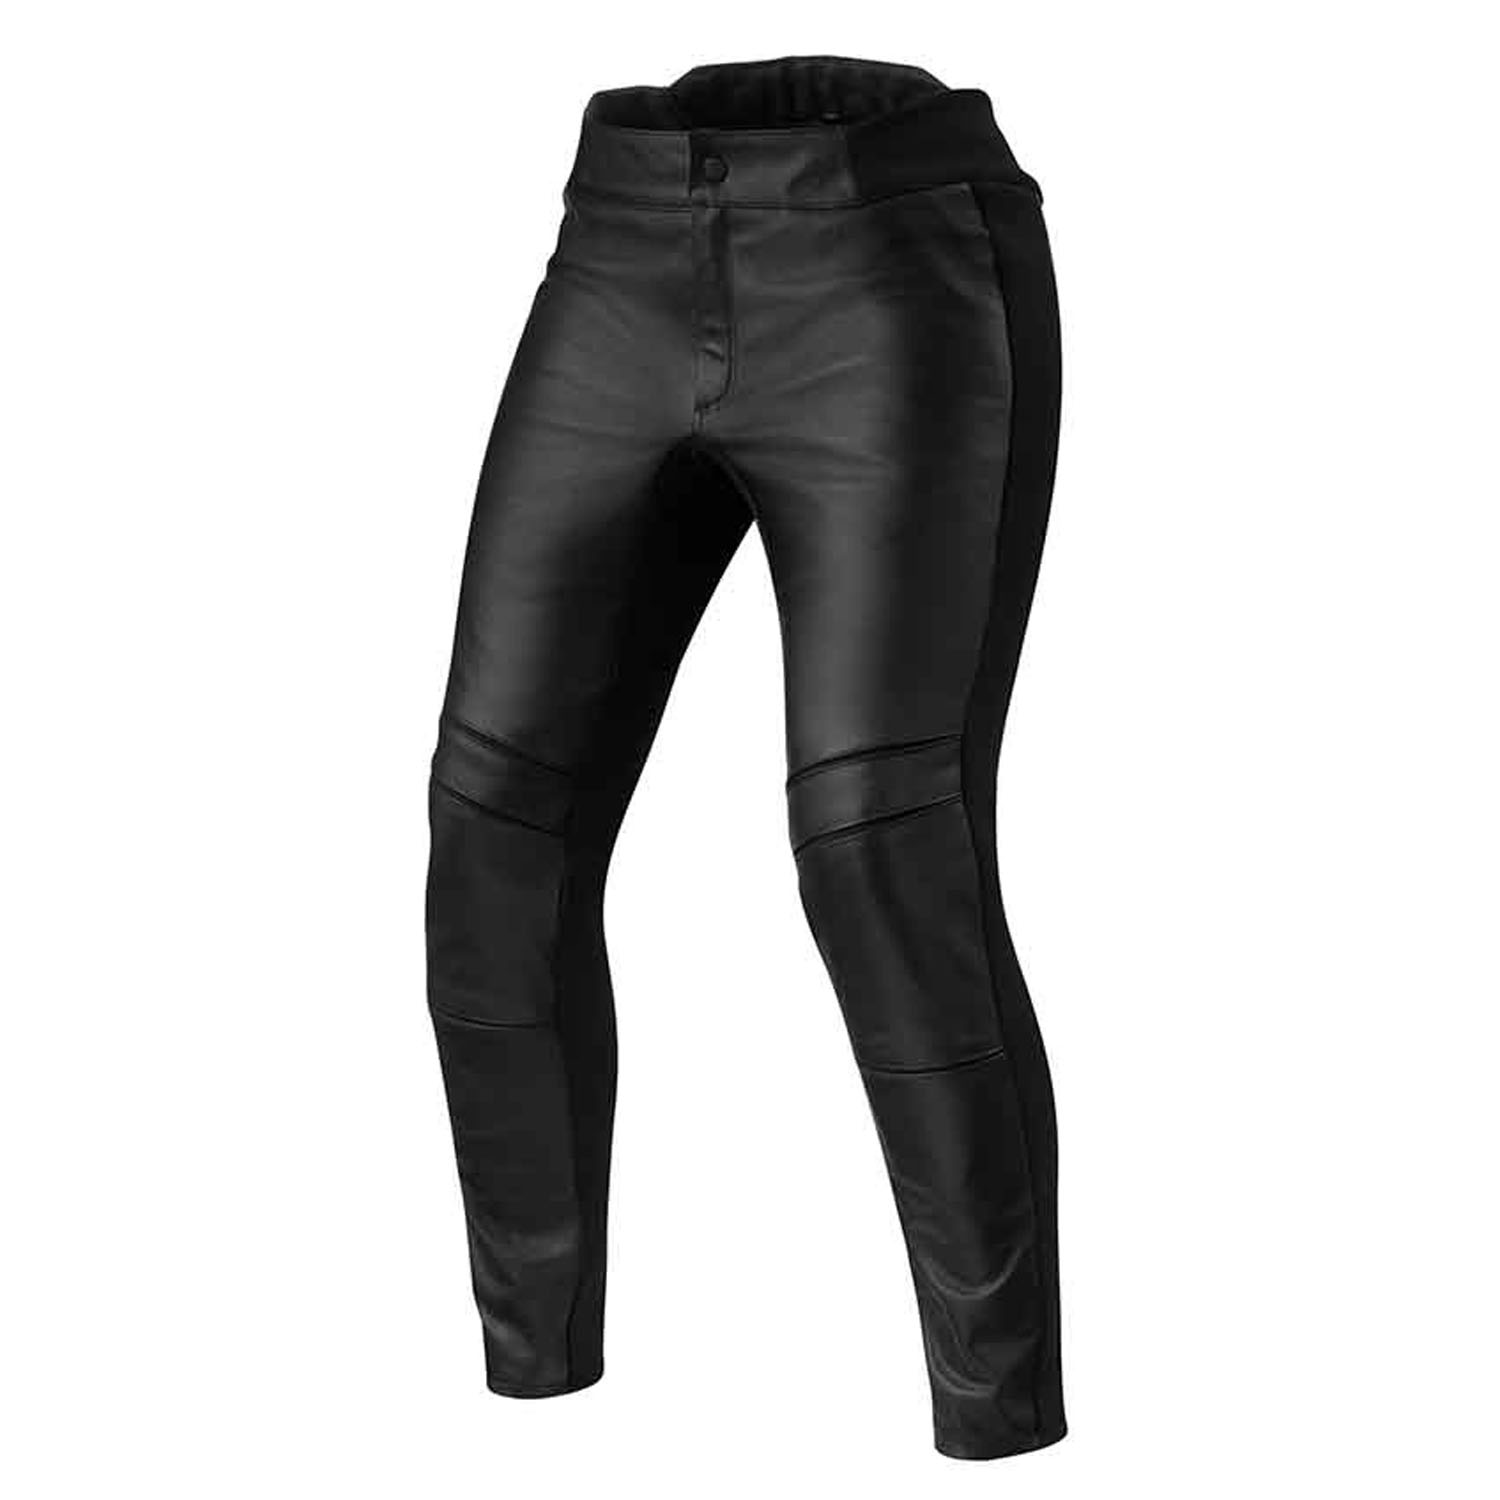 Image of REV'IT! Maci Ladies Black Standard Motorcycle Pants Size 36 ID 8700001359061